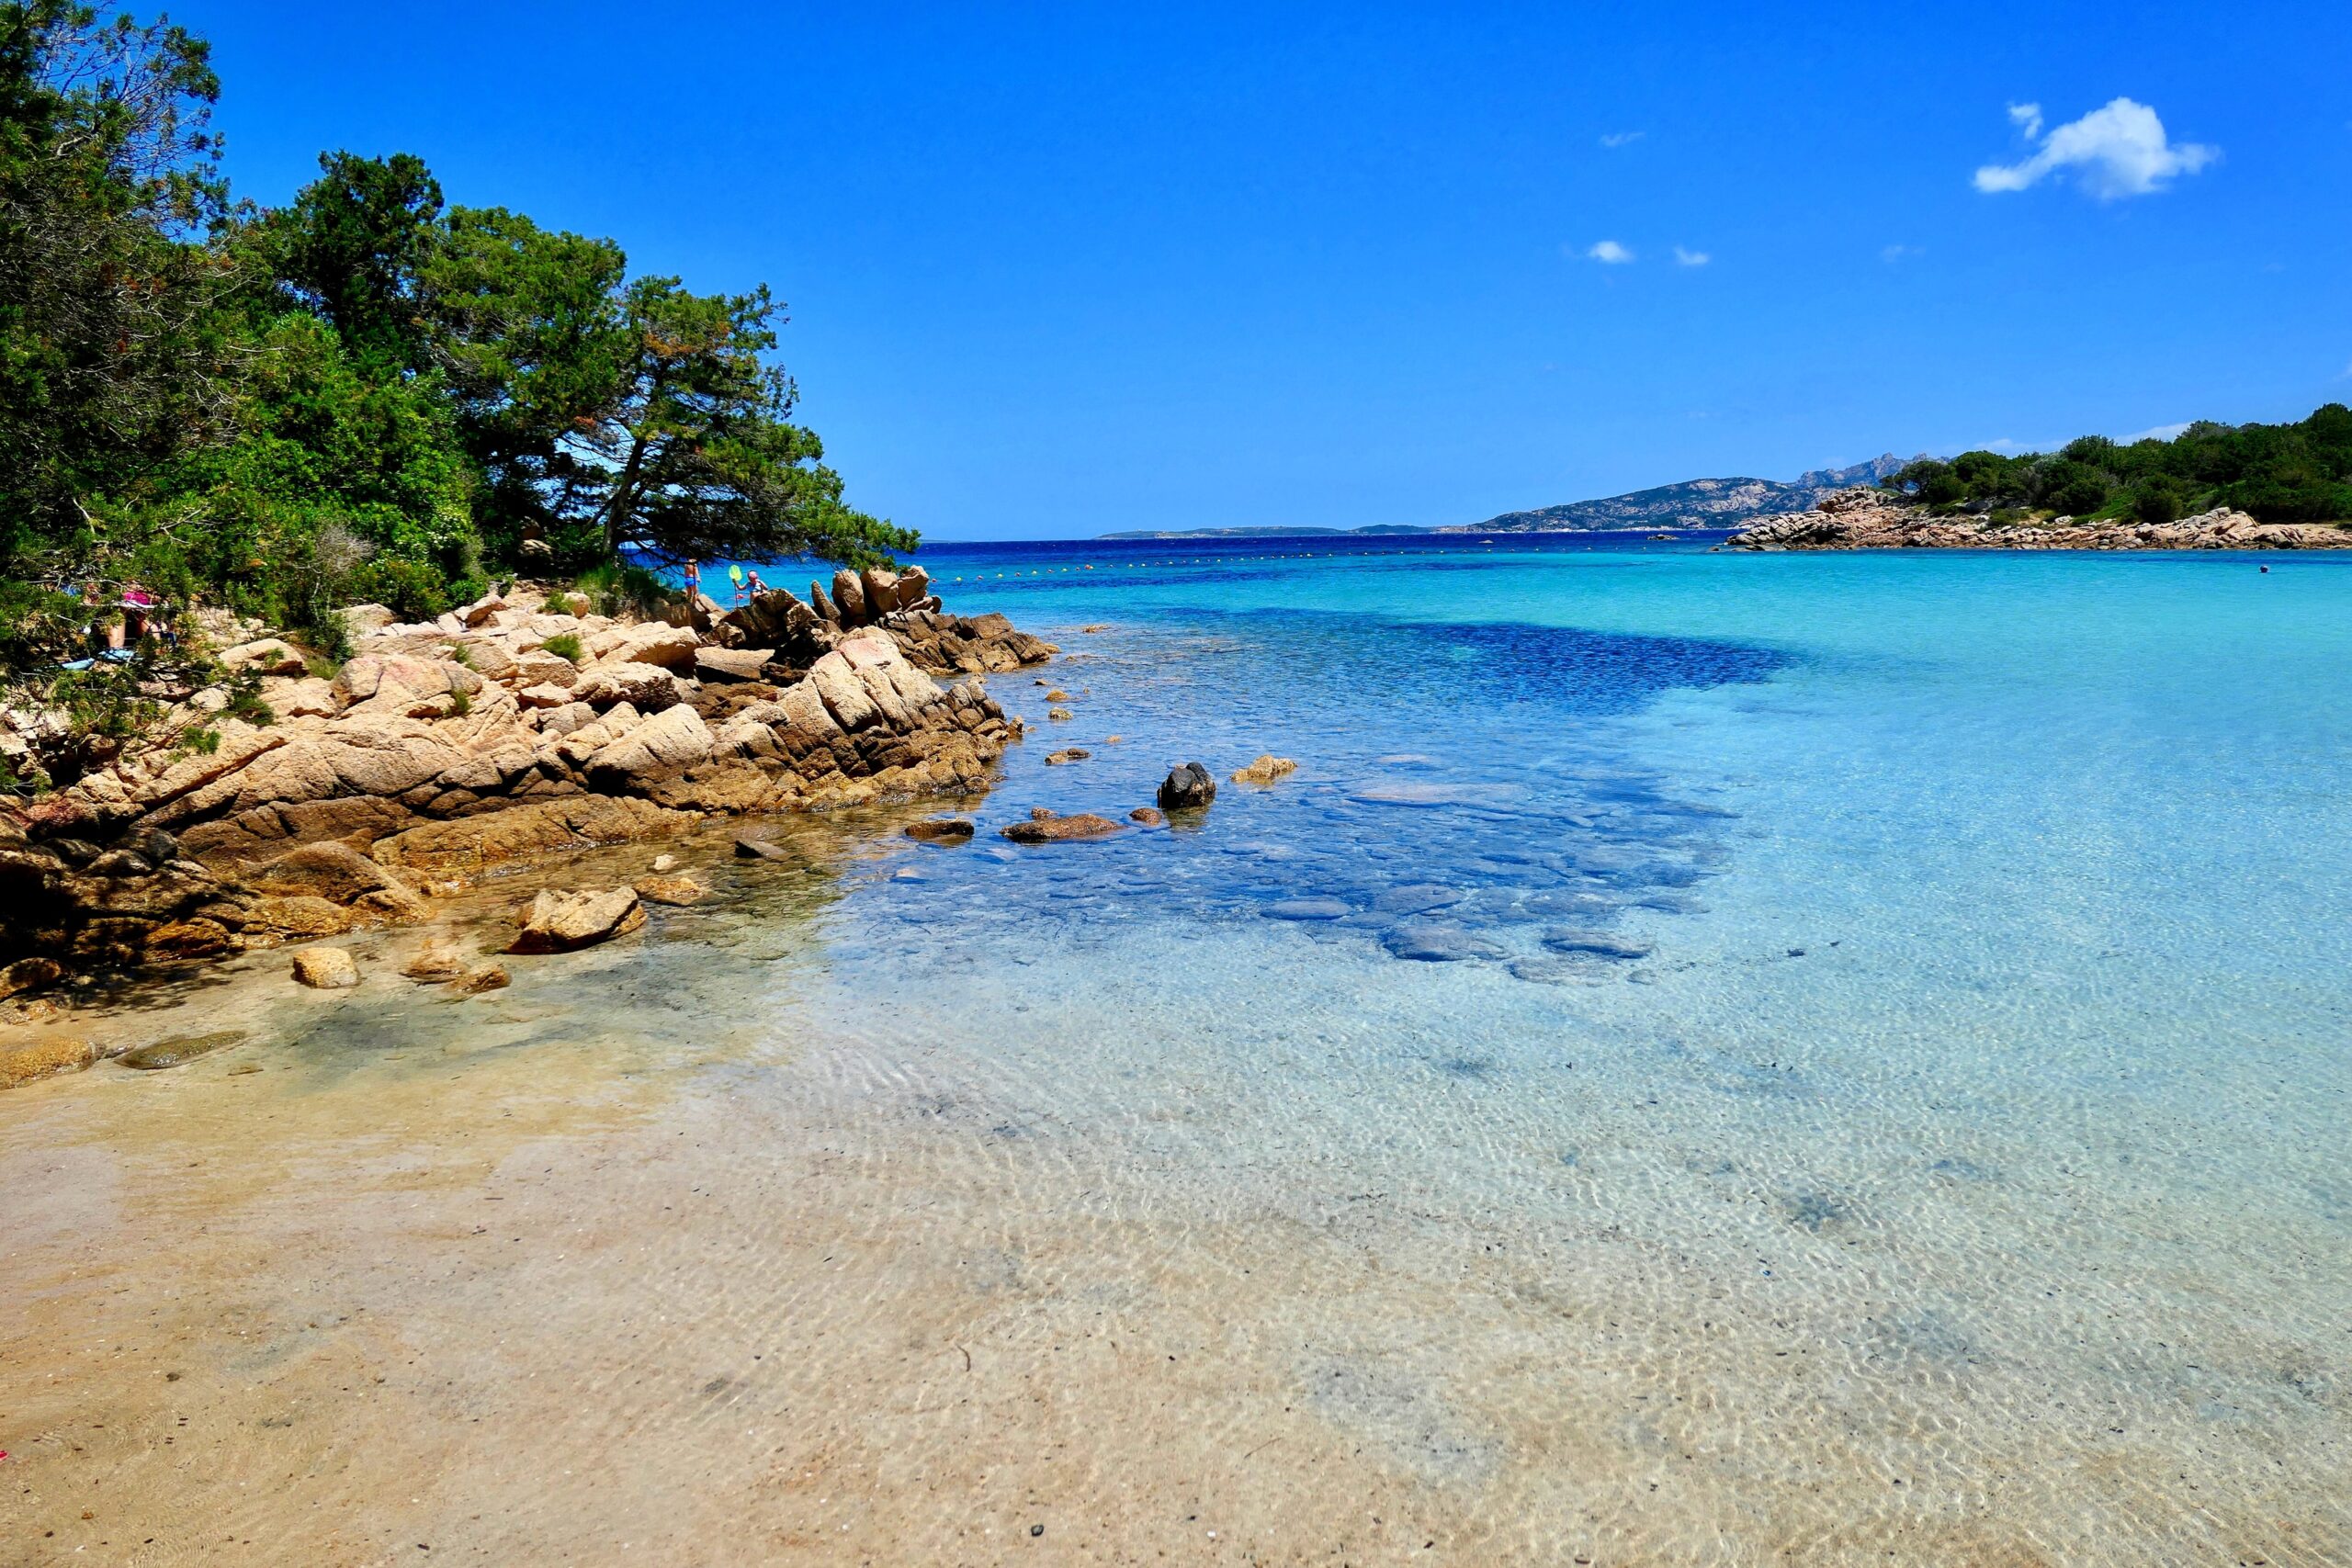 Spiaggia Li piscini, Palau, Sardinia, Italy